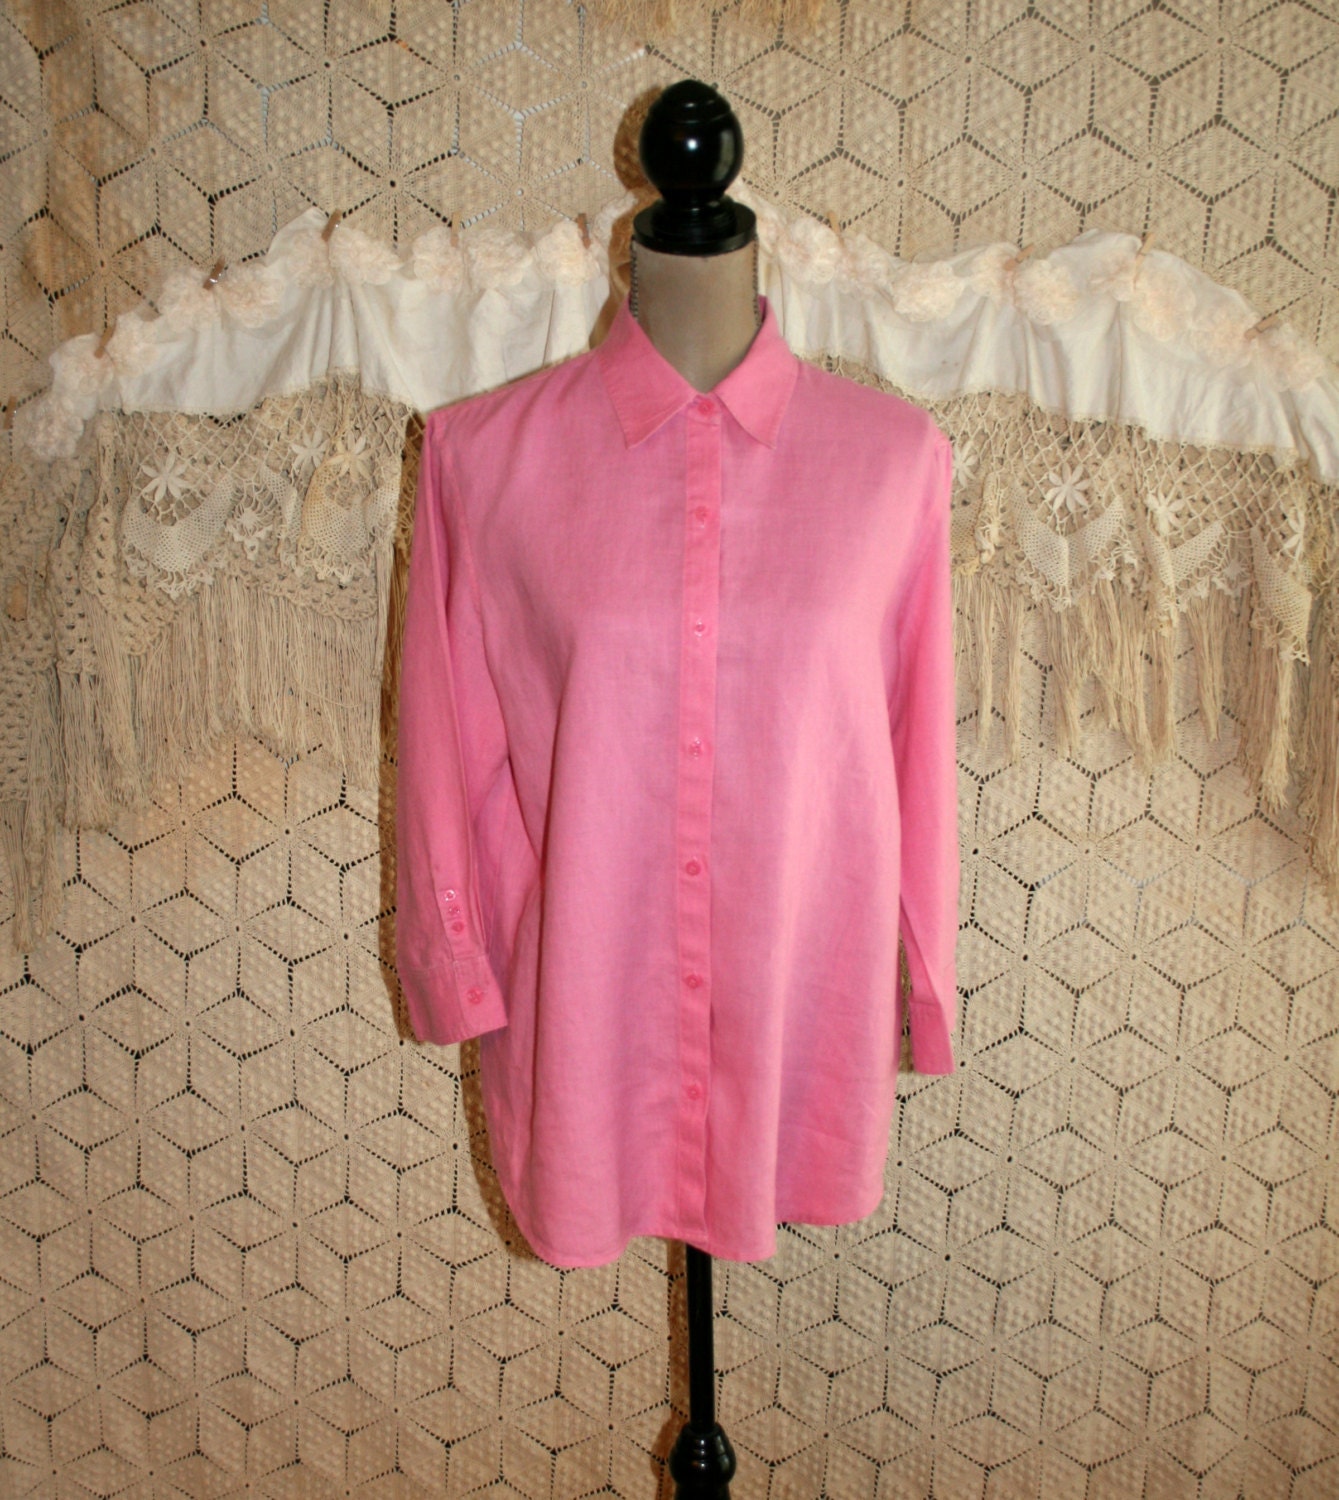 Pink Linen Shirt Women Large XL Dark Pink Blouse Button Up Top